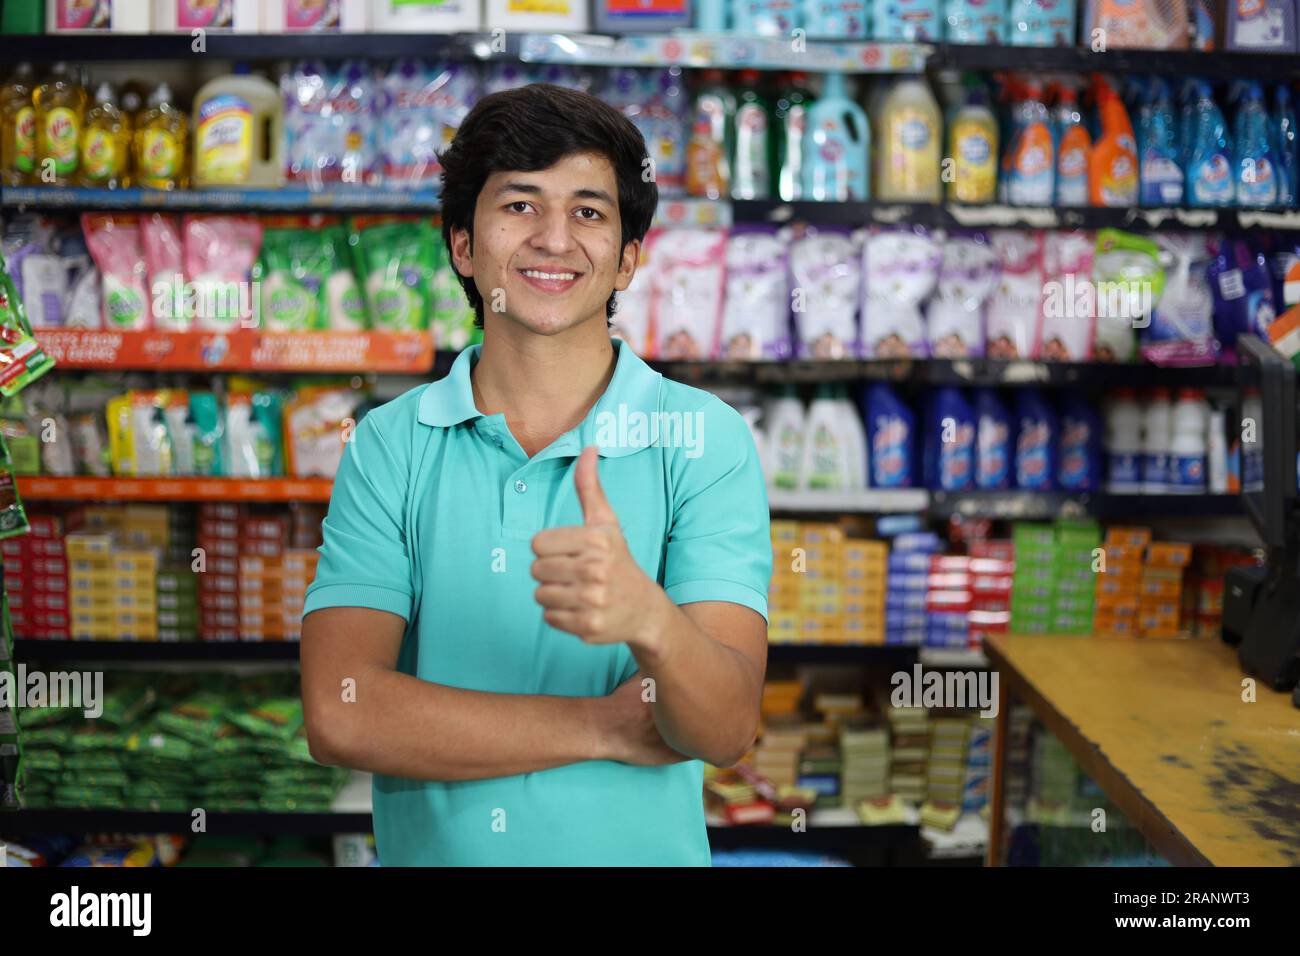 Ritratto di un ragazzo in forma felice e sorridente che acquista in un negozio di alimentari. Comprare della spesa per casa in un supermercato. Foto Stock